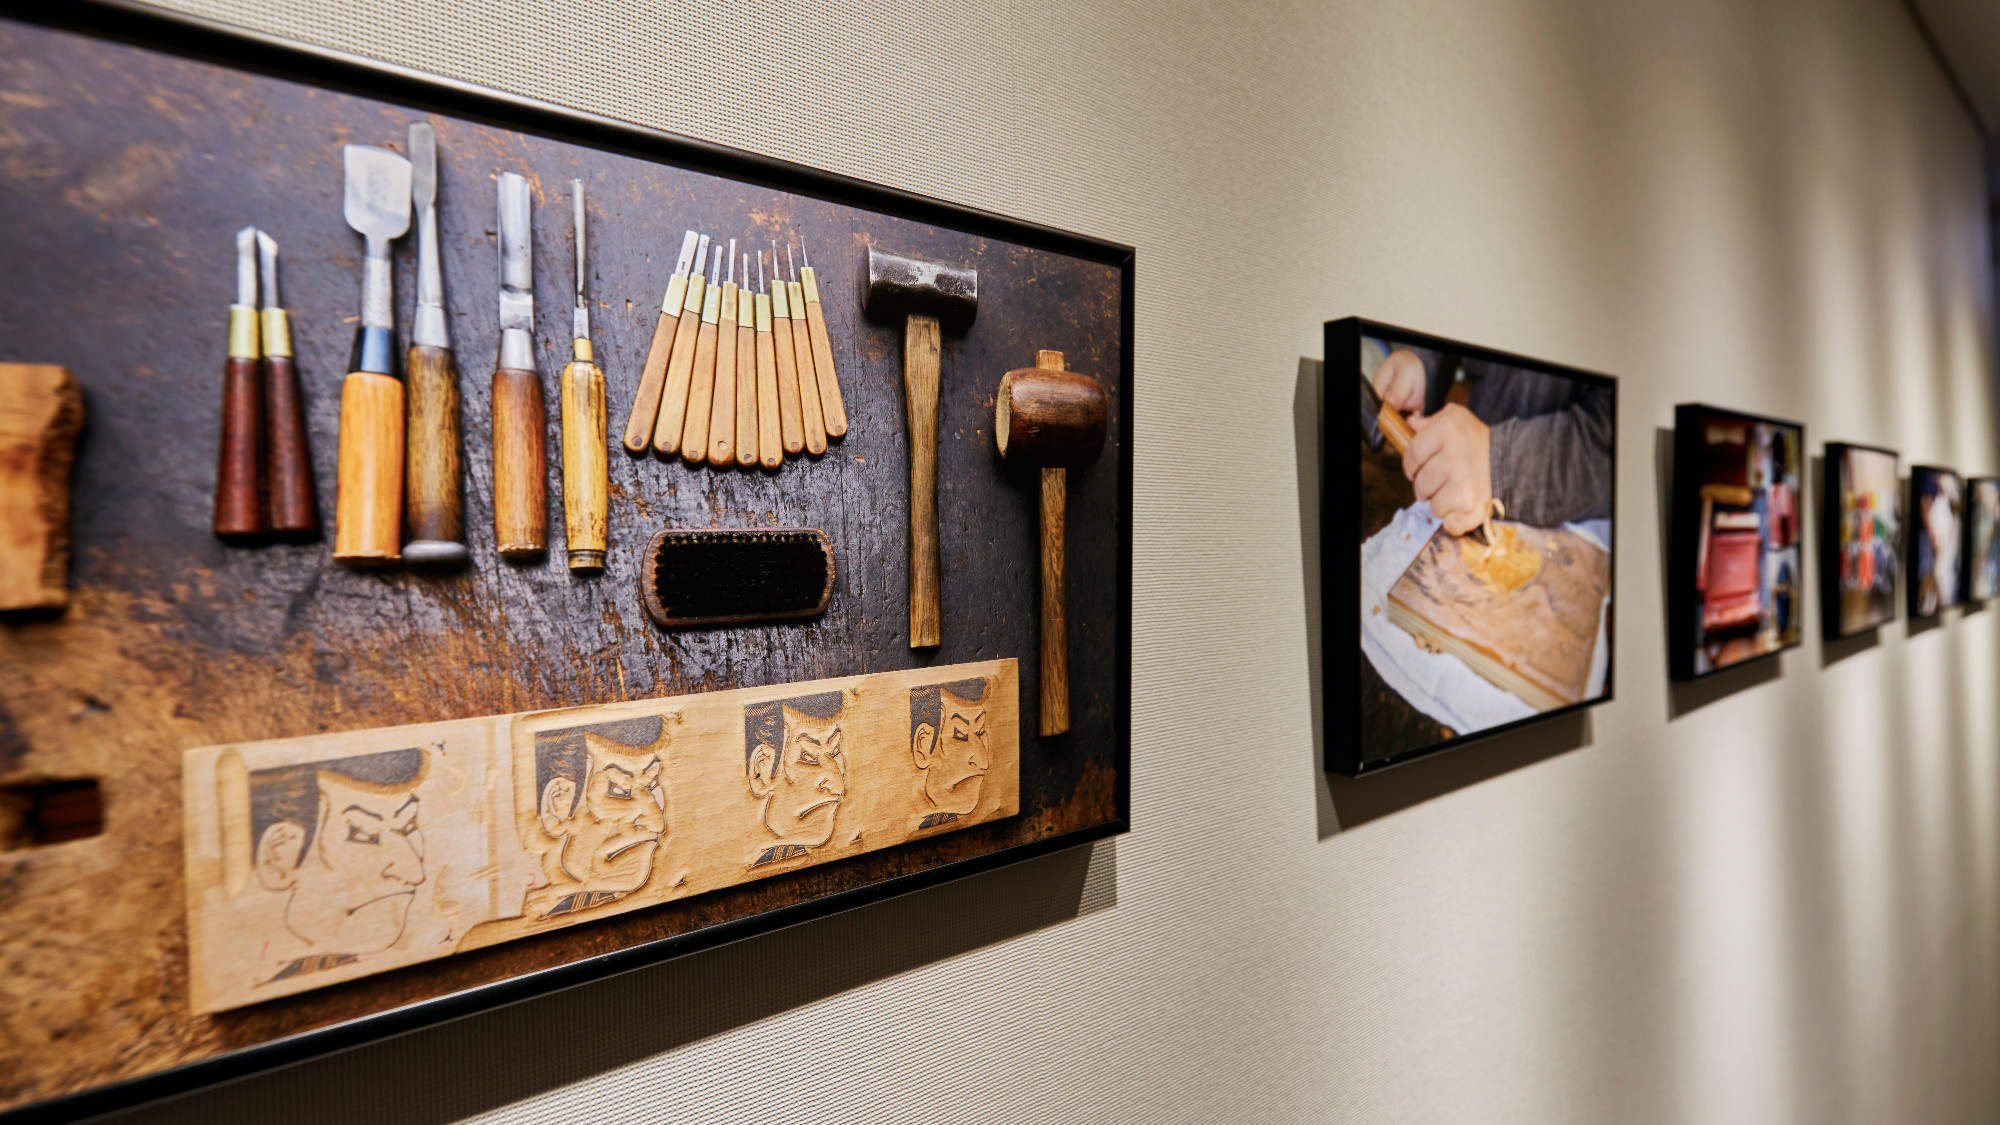 【コリドーギャラリー・28F】美しい日本の伝統工芸を製作工程や道具とともに紹介する「職人という生き